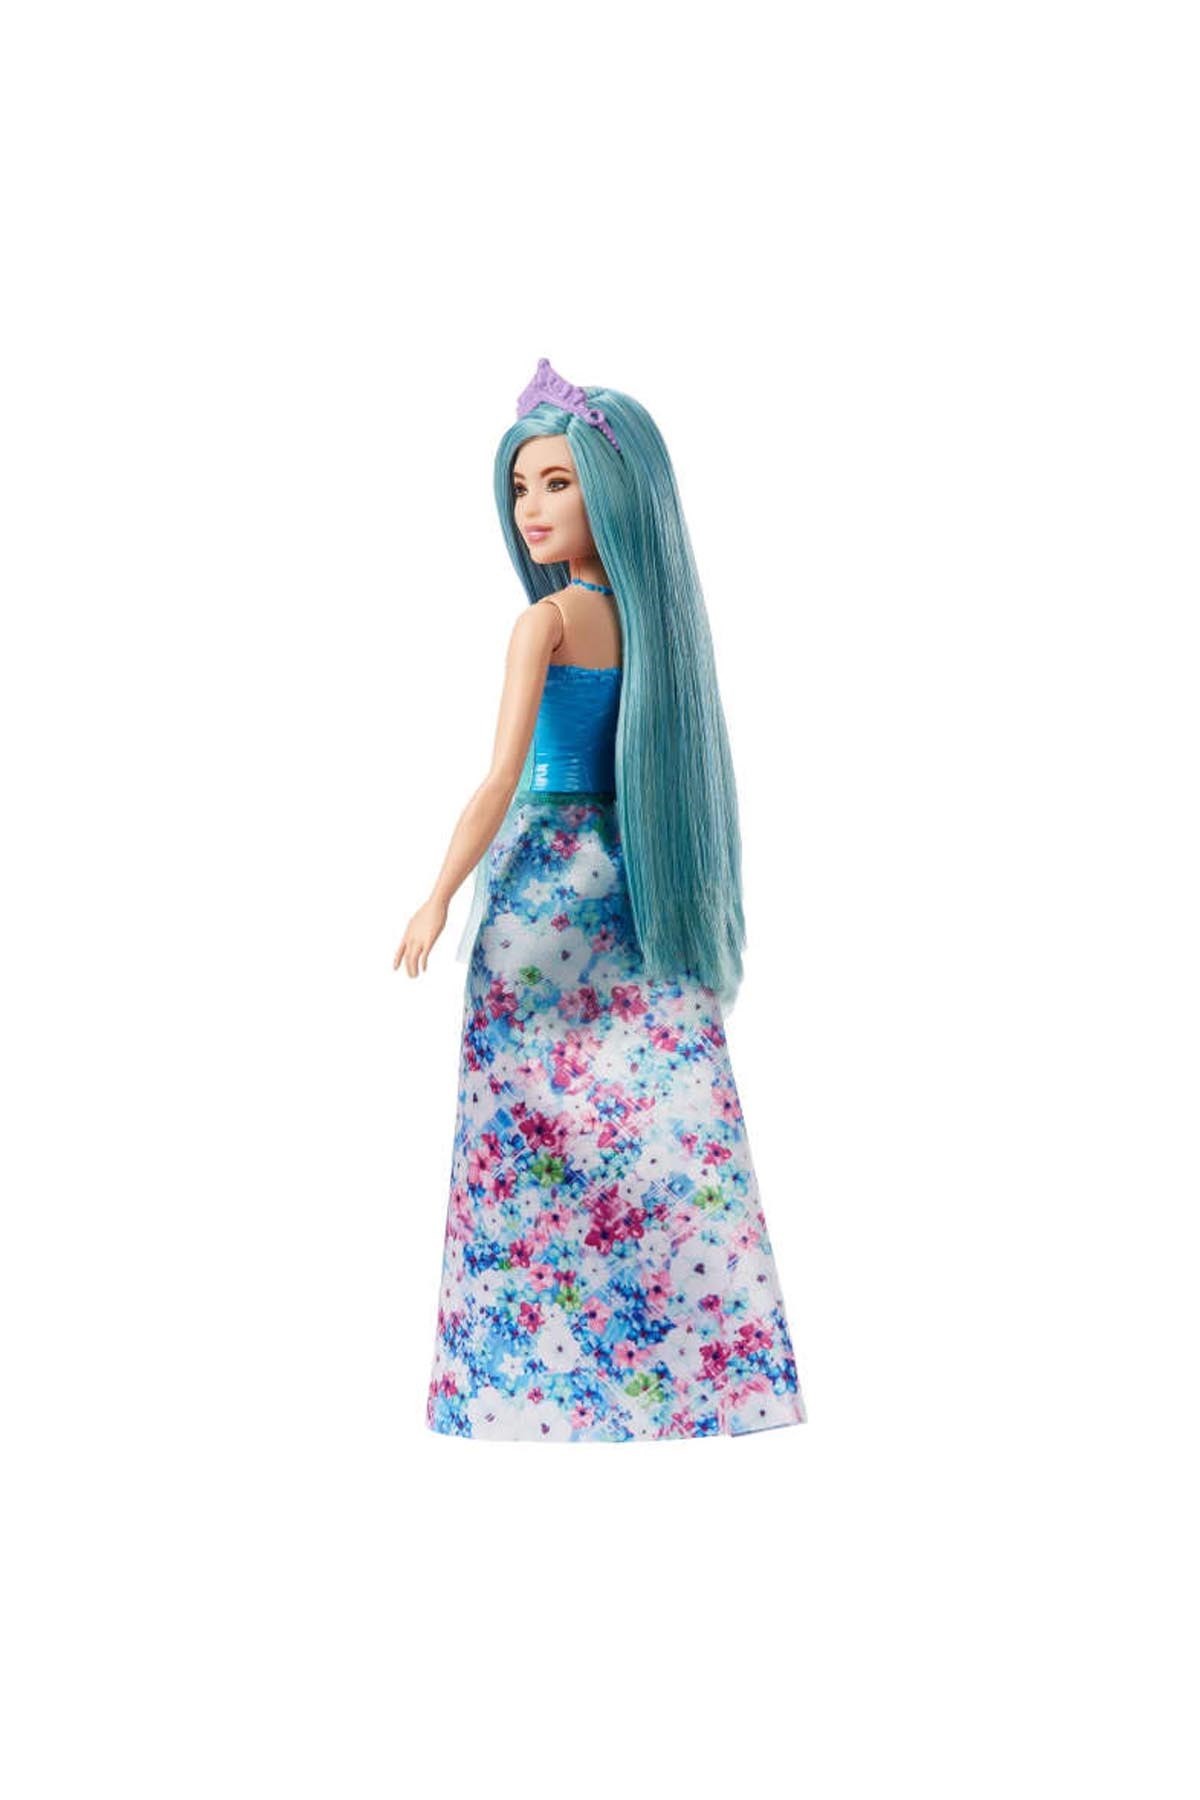 Barbie Dreamtopia Prenses Bebekler Serisi HGR16